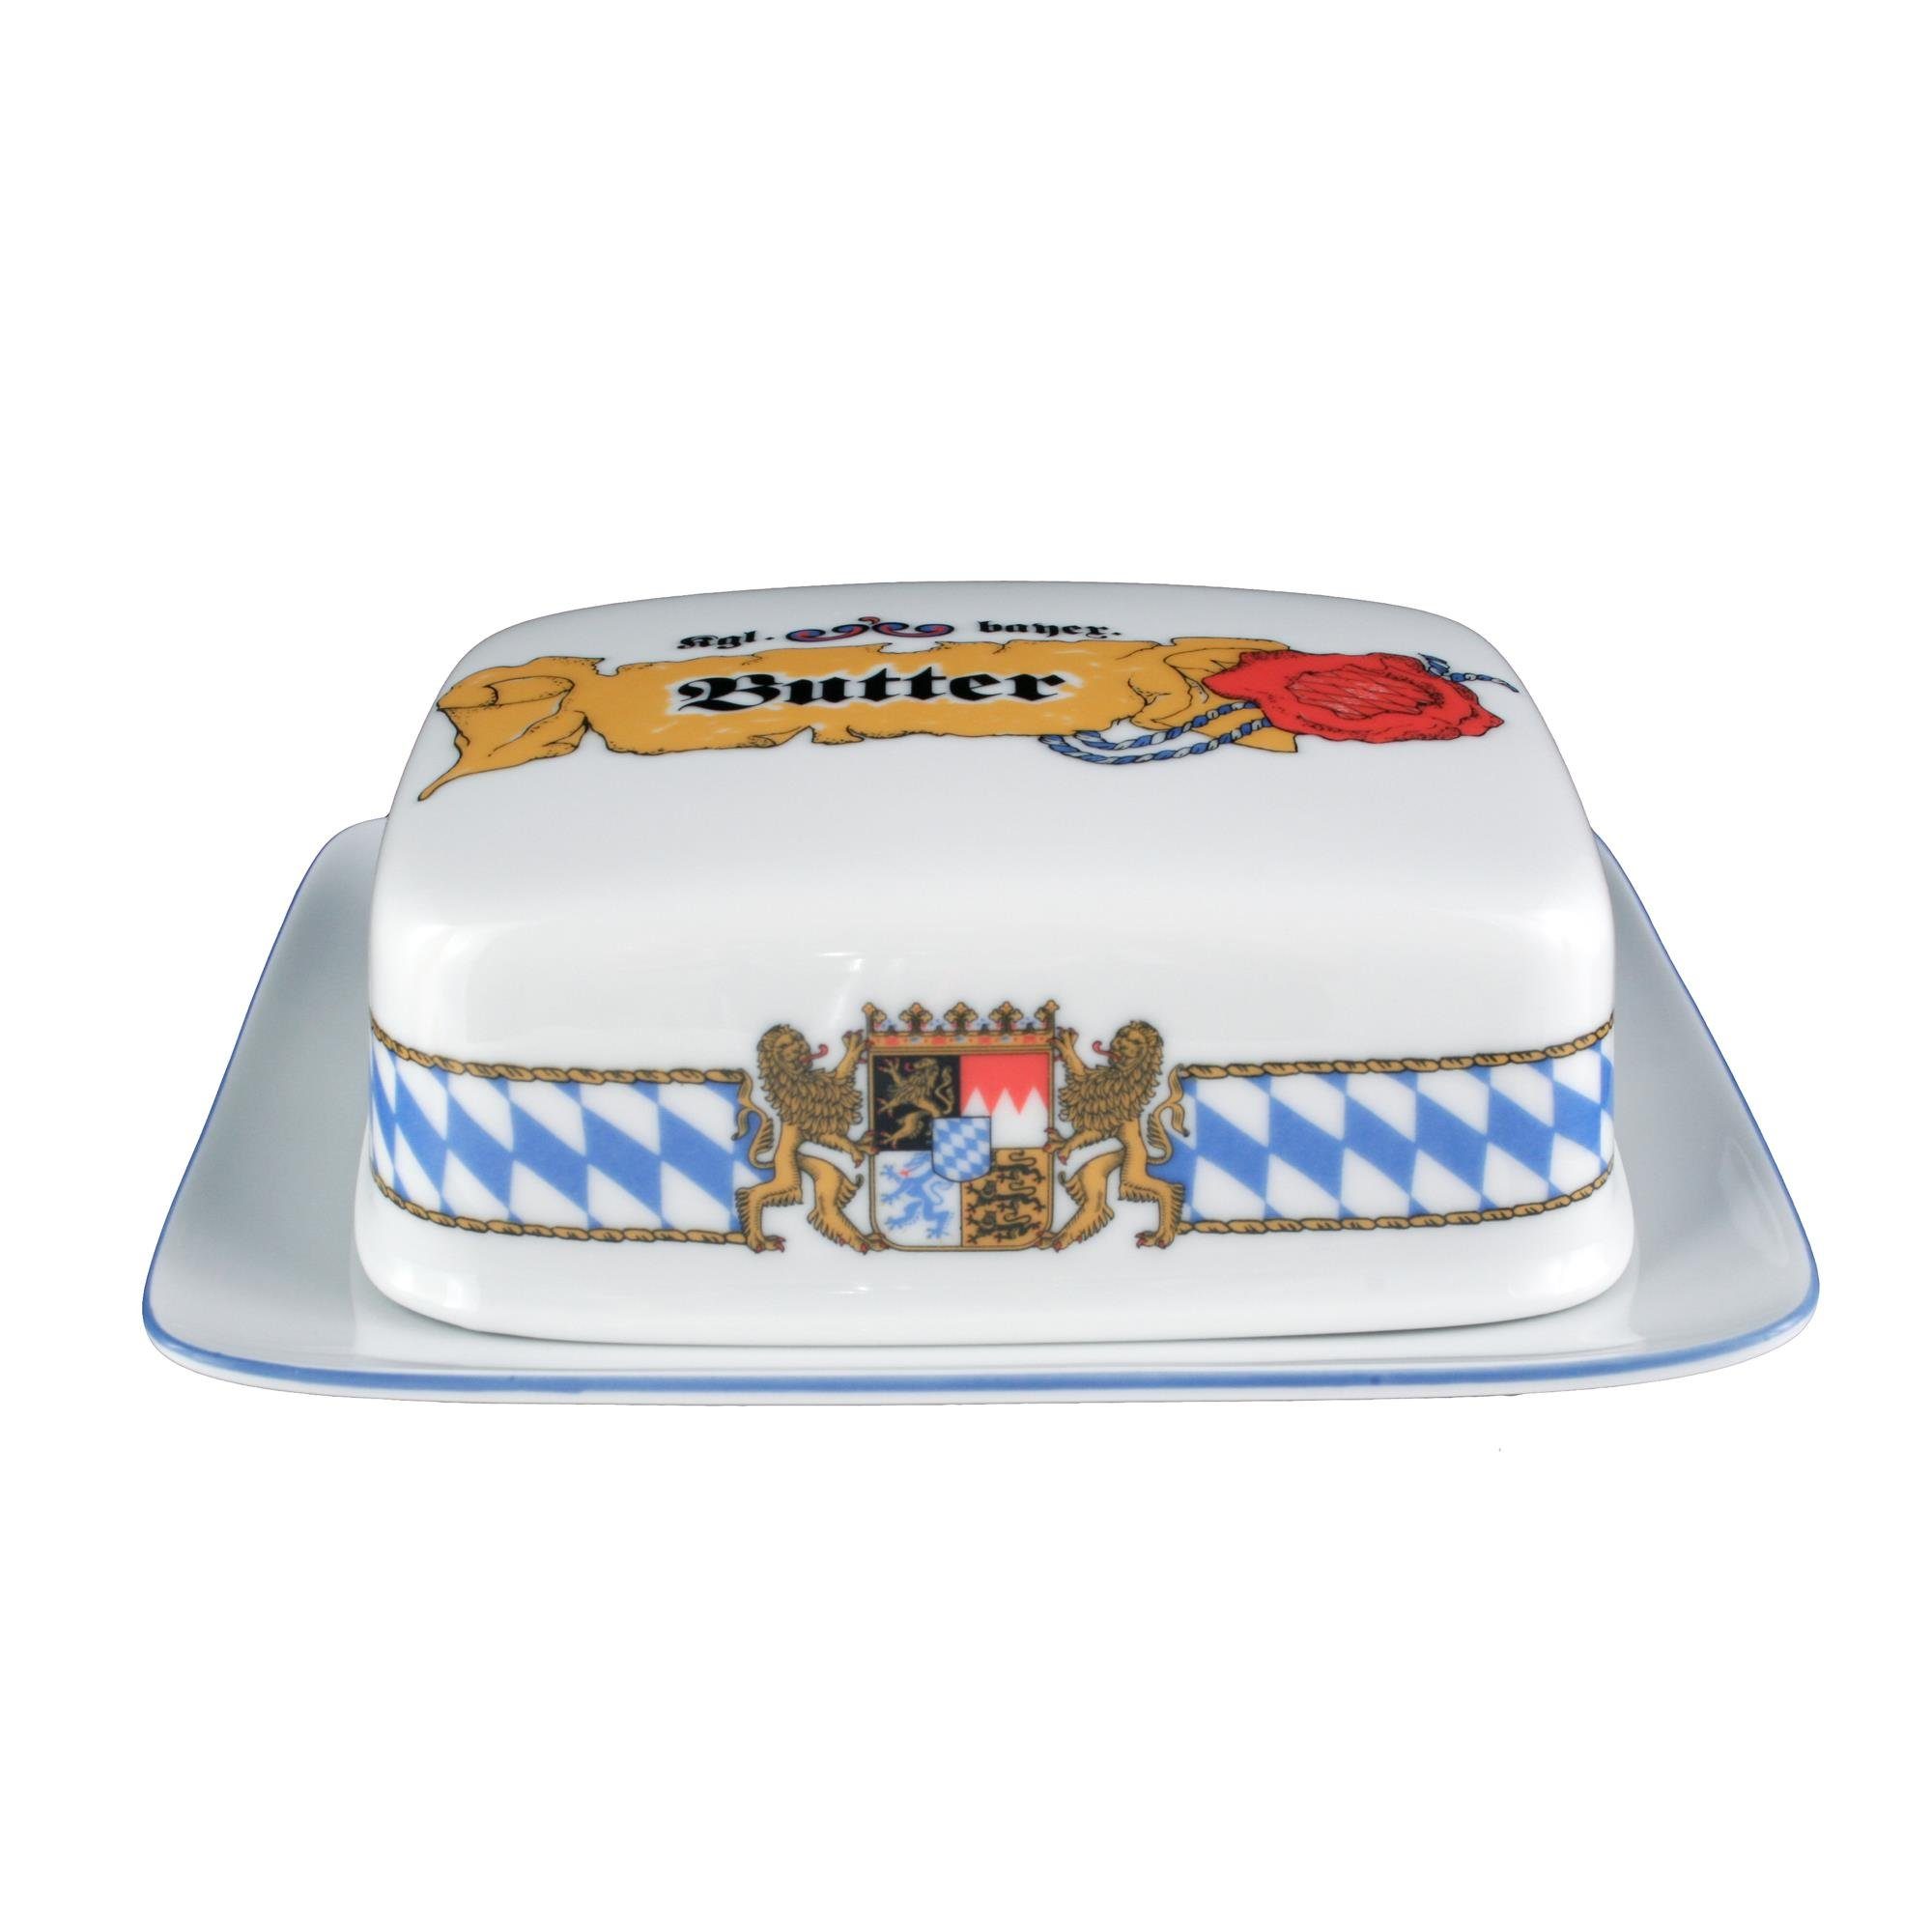 Seltmann Weiden Geschirr-Set Butterdose 1/2 Pfd Compact Bayern 27110 von Seltmann Weiden, Porzellan